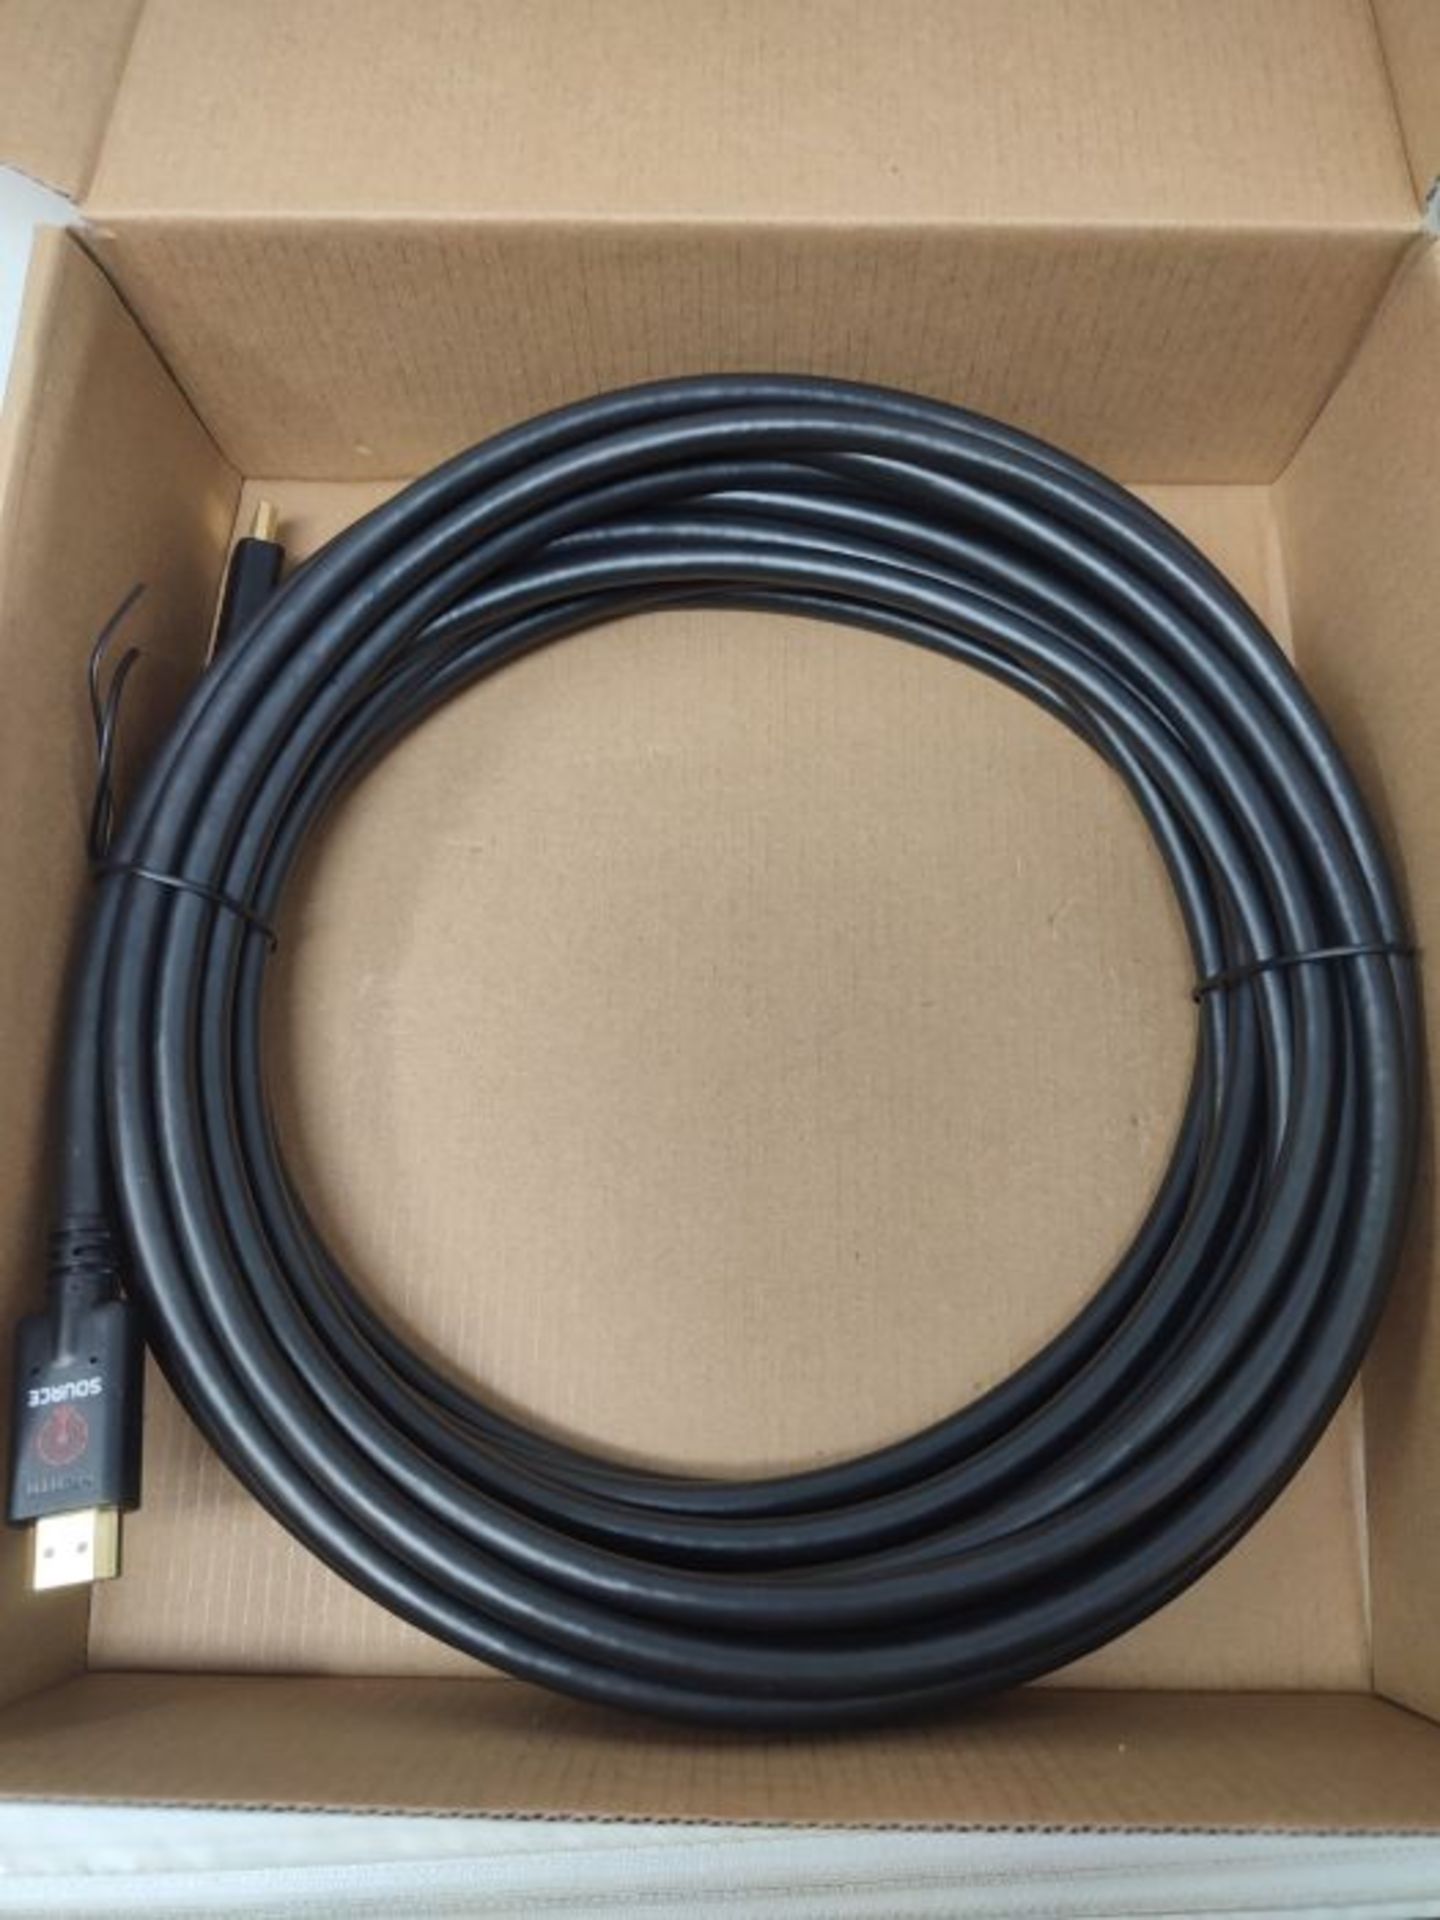 Amazon Basics HDMI-Kabel mit nicht-bidirektionalem 10.7 m RedMere-Kabel - Image 3 of 3